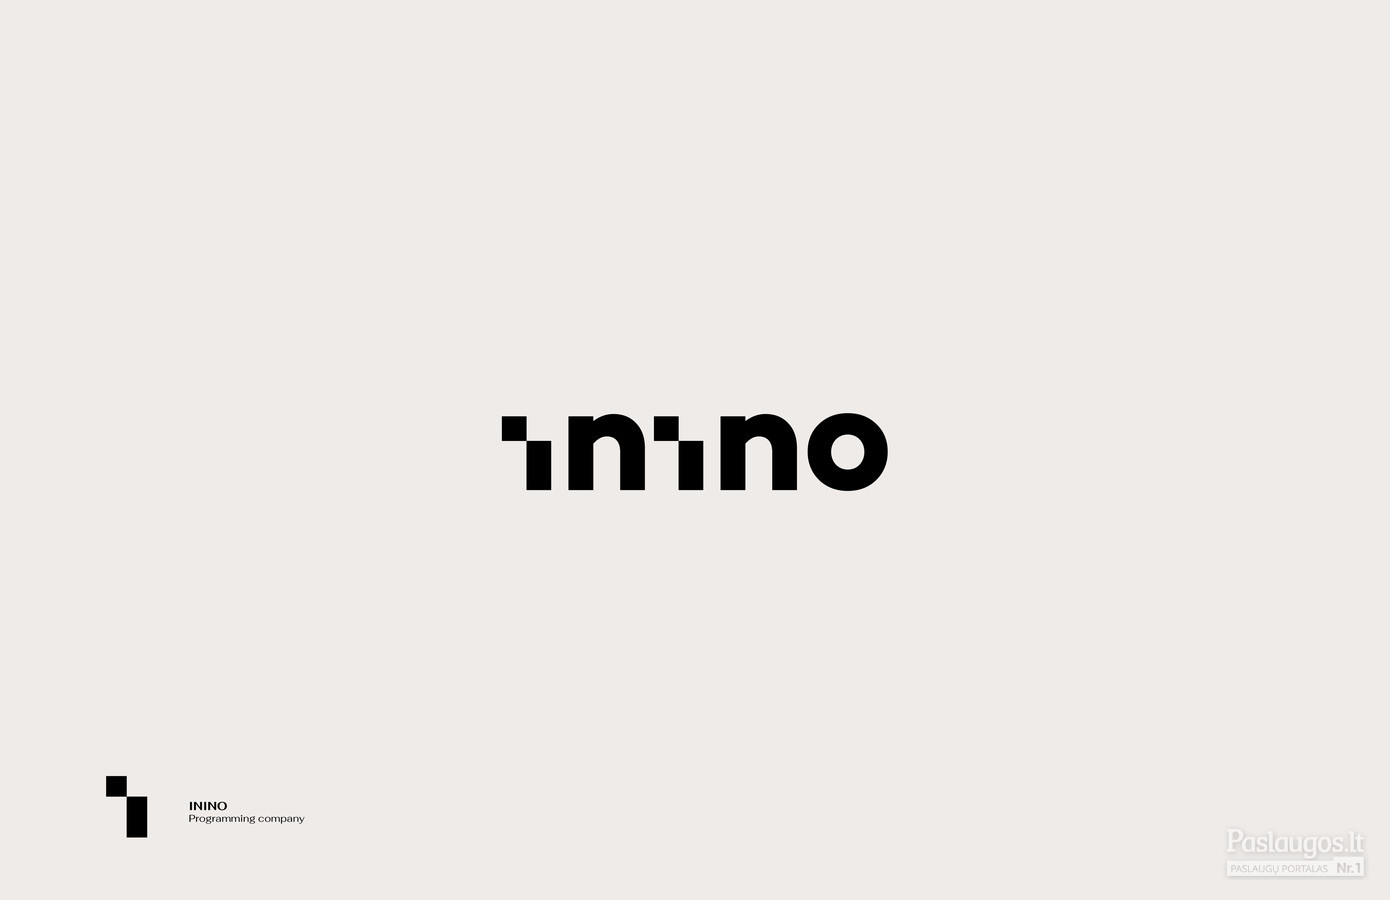 ININO - Programming company